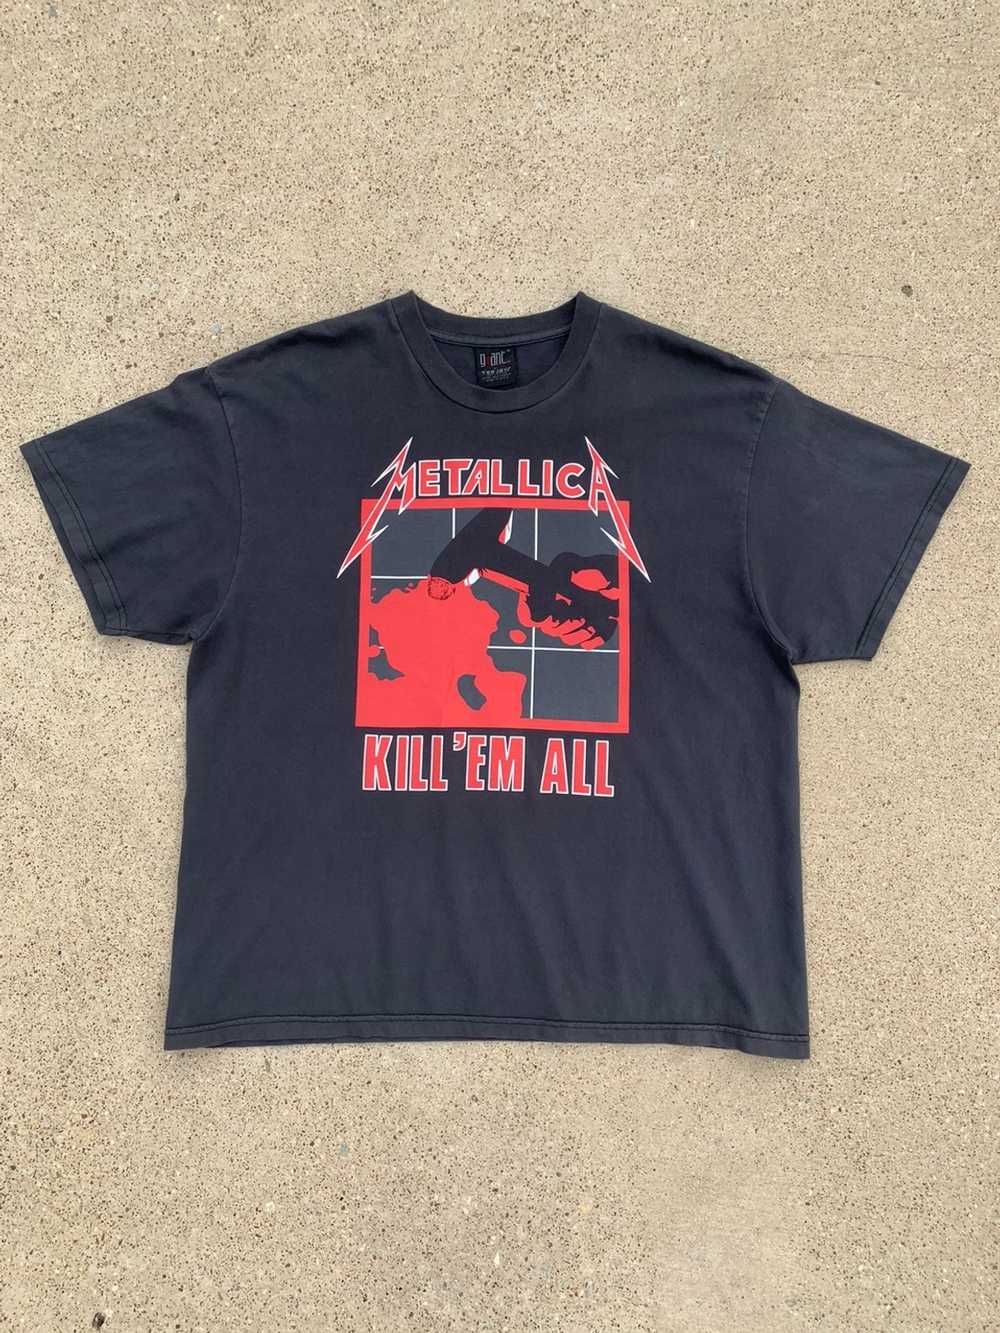 Giant × Metallica 1994 Metallica Kill ‘Em All Tee - image 1